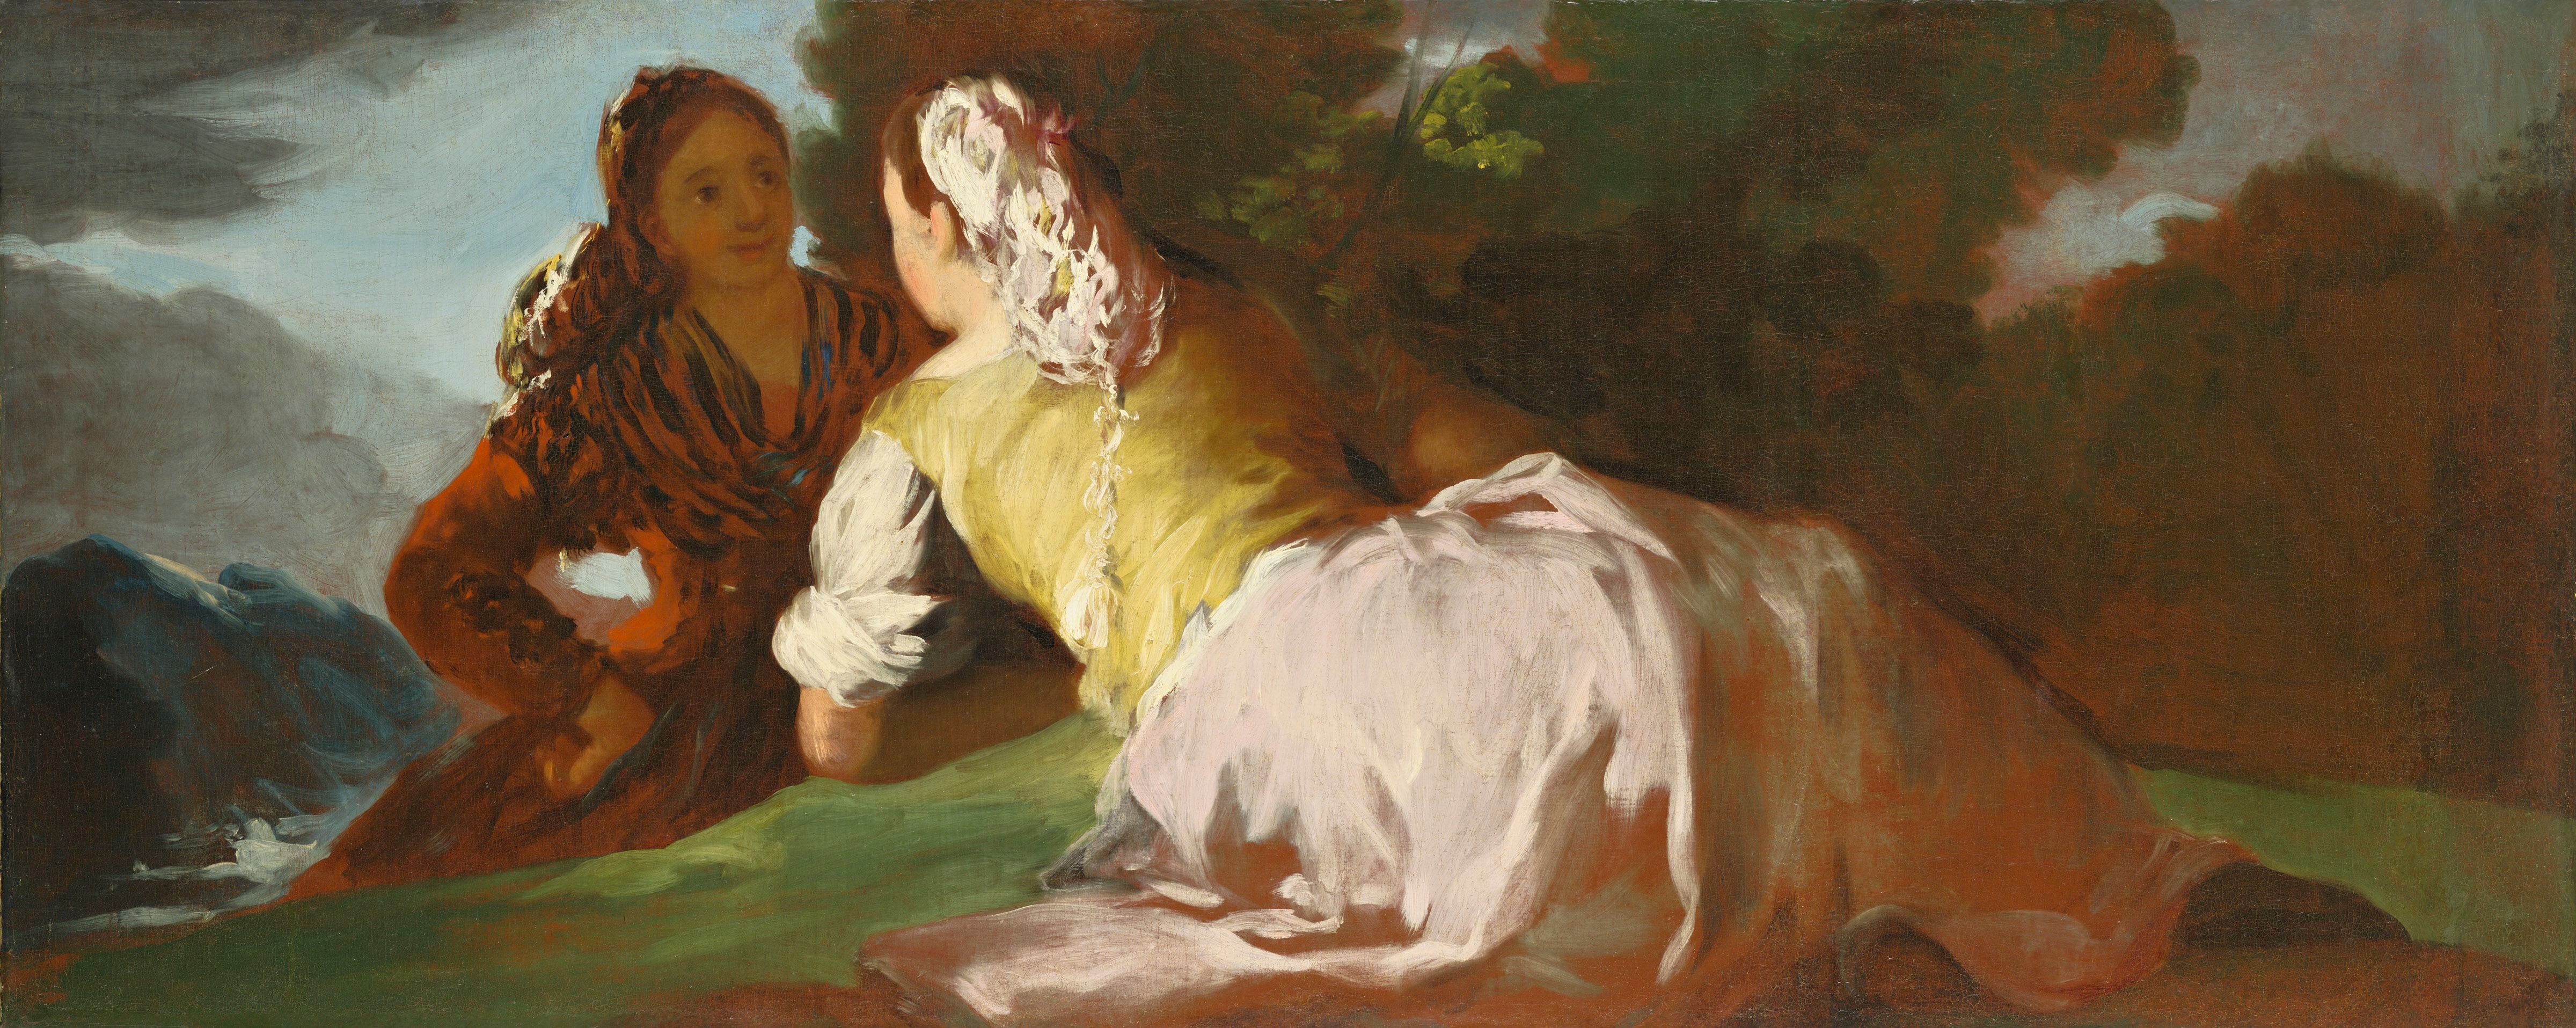 La obra de Goya 'Mujeres conversando' perteneció a Martínez y hoy se conserva en el Wadsworth Atheneum Museum of Art (Hartford, Estados Unidos).